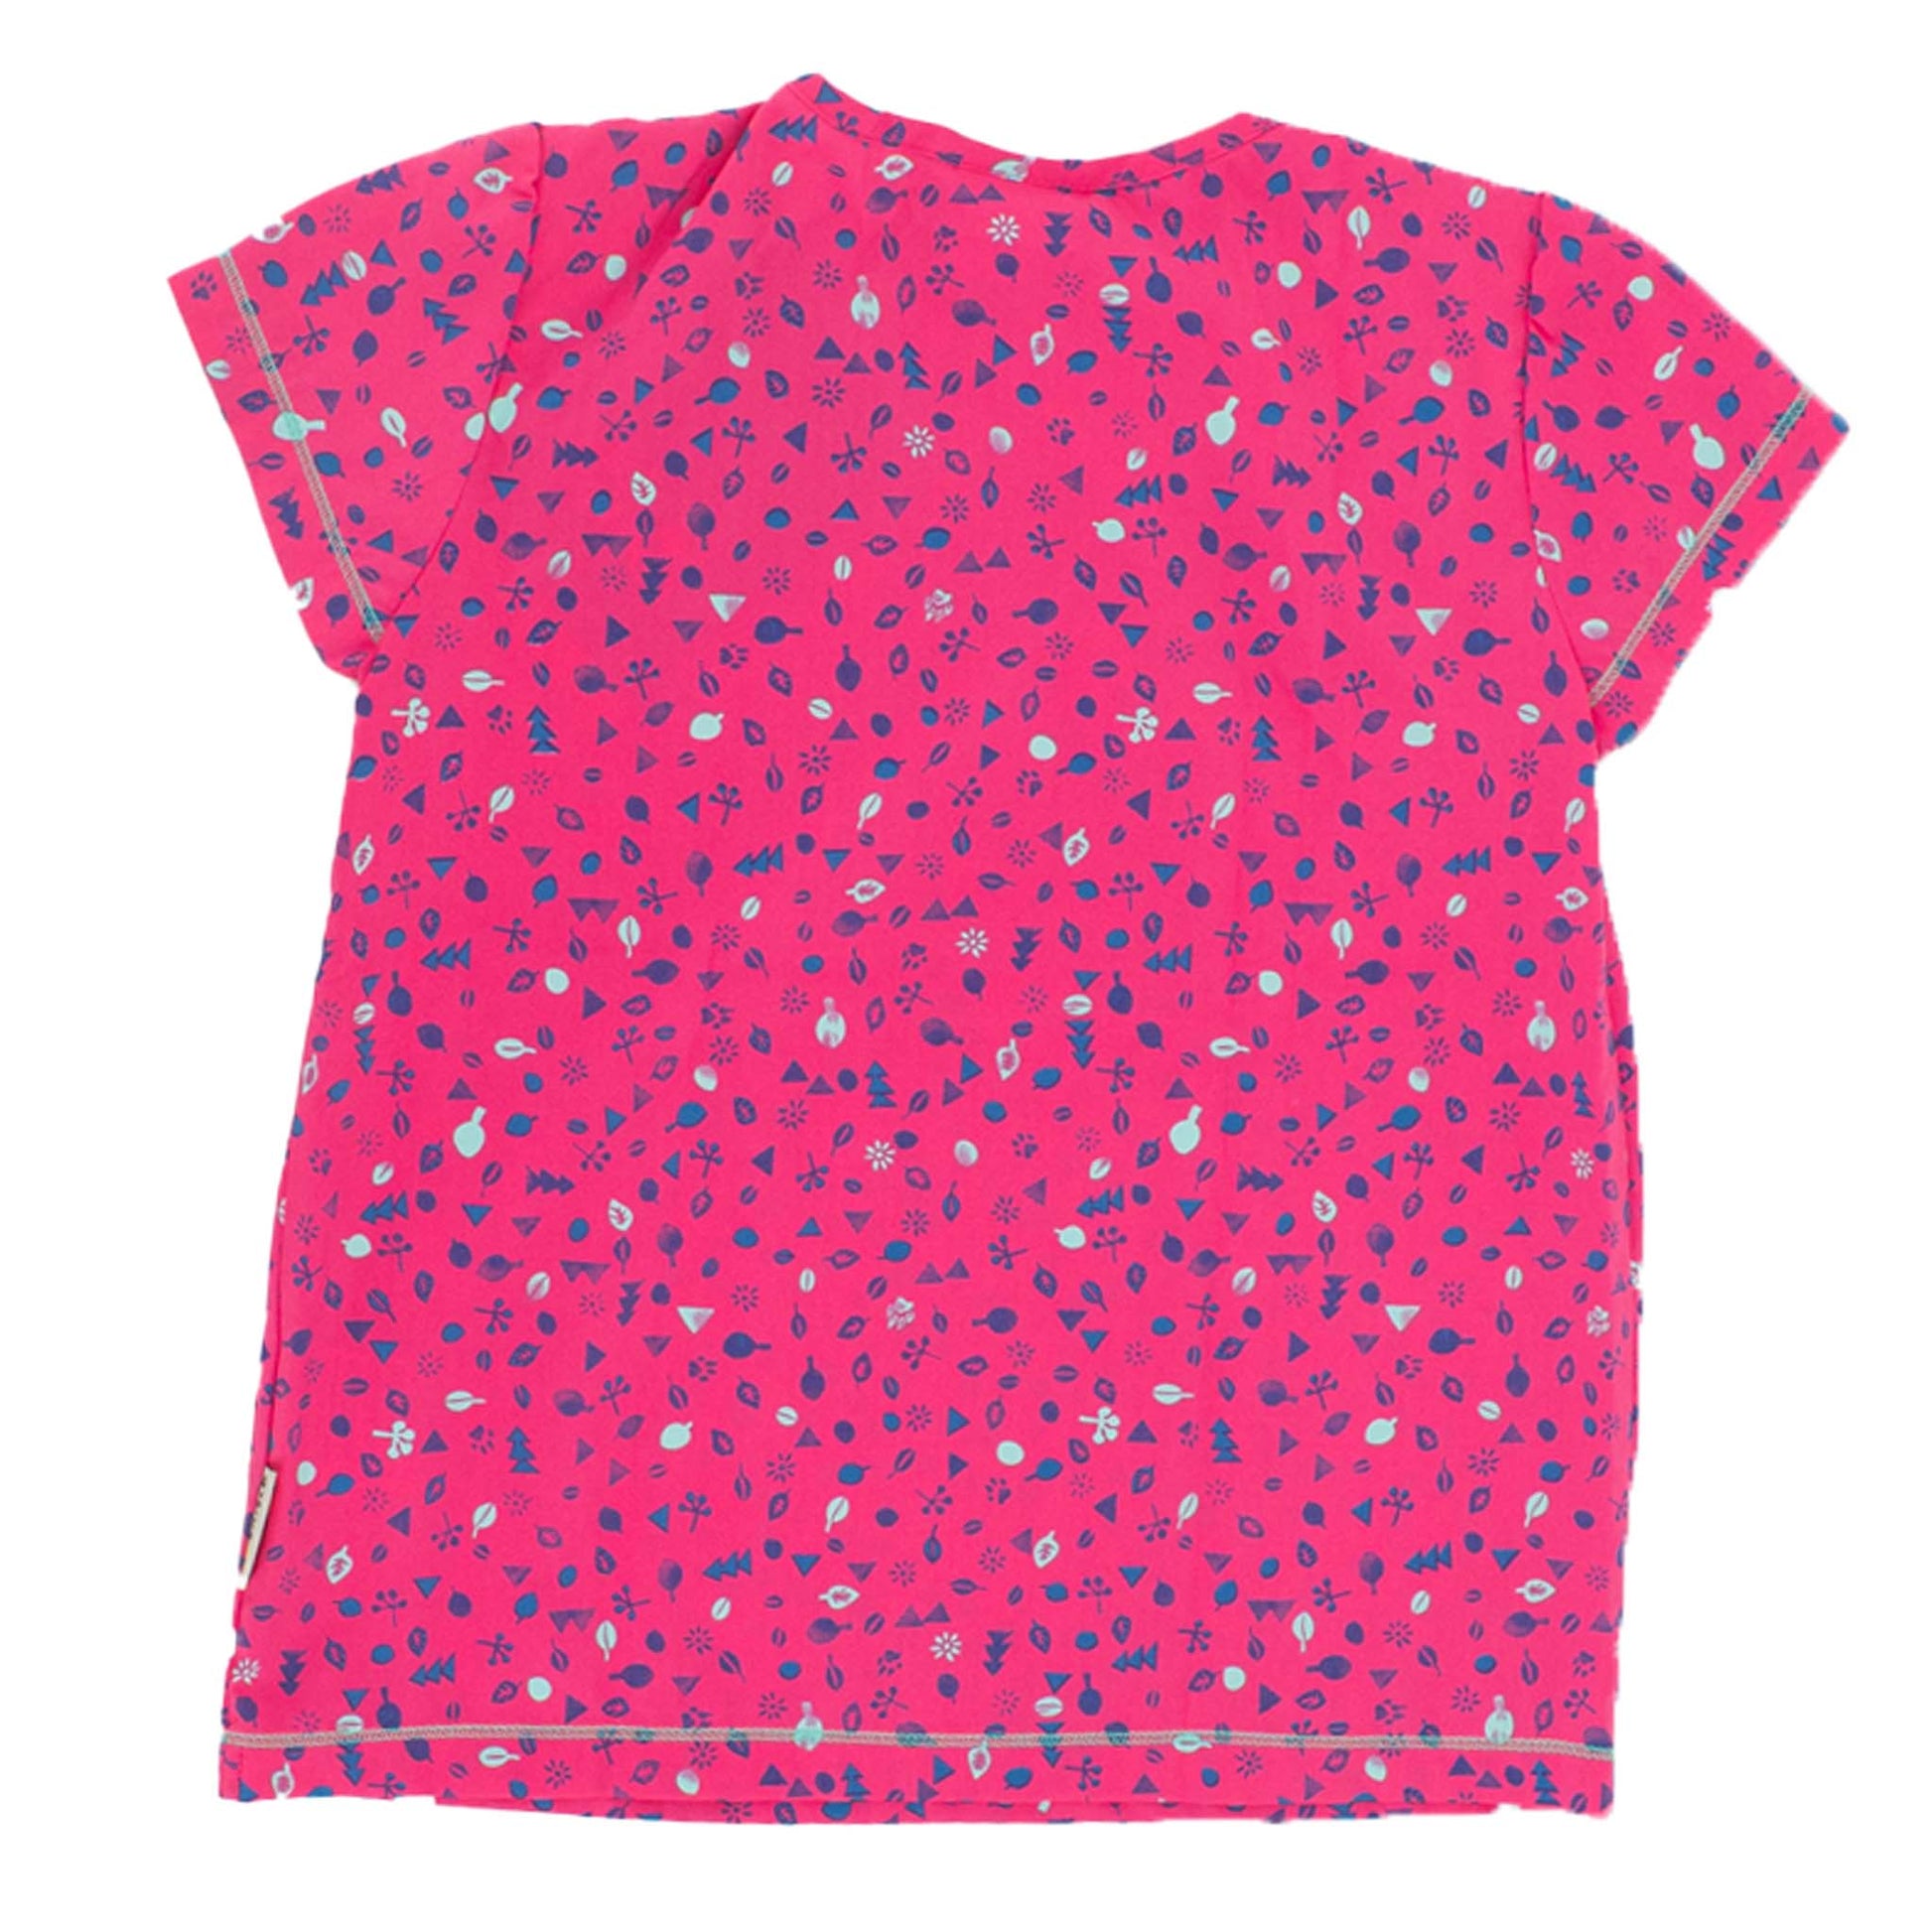 Jack Wolfskin Sunflower Shirt Girls Tee Kinder T-Shirt kurzarm Shirt 1605841-2045-2